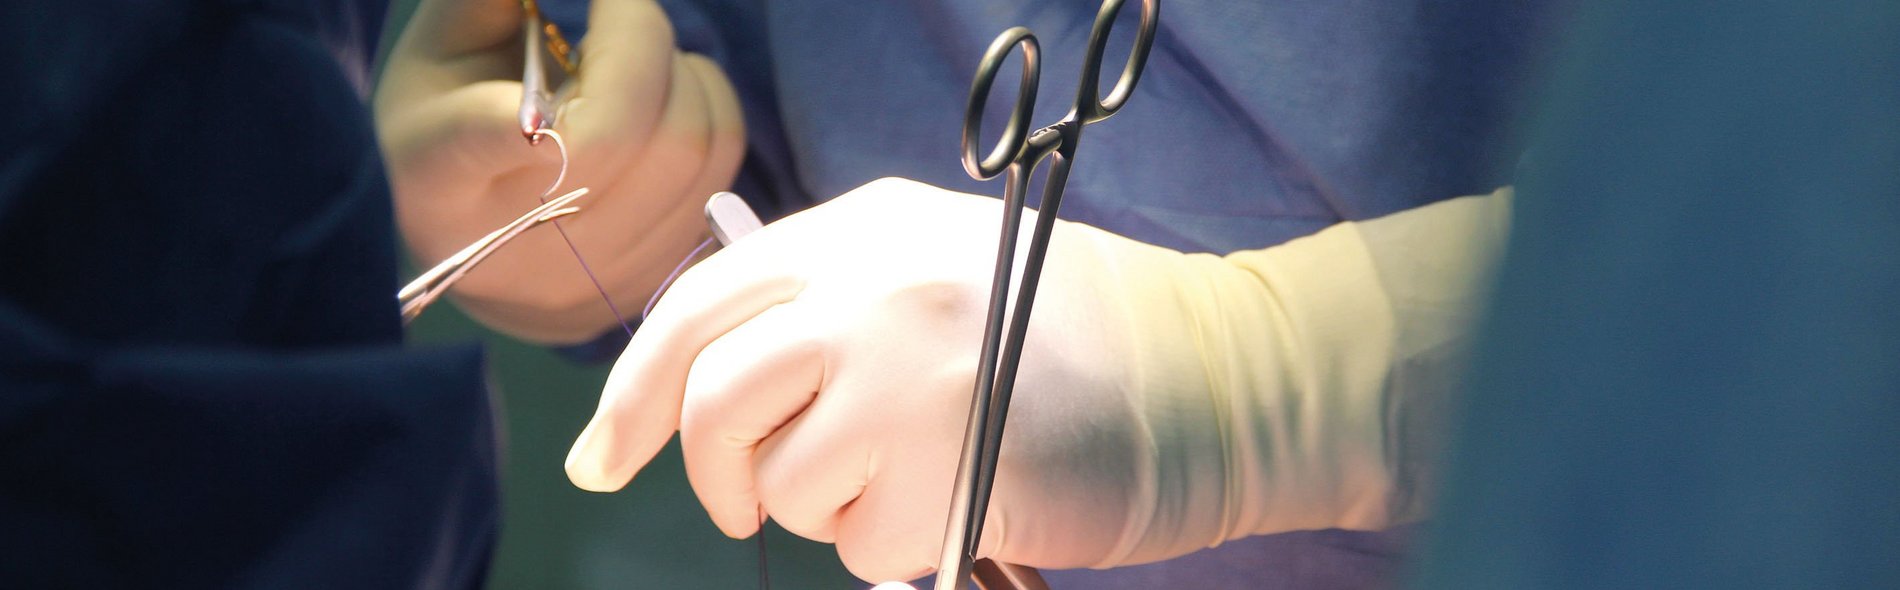 Arzthände bei einer Operation